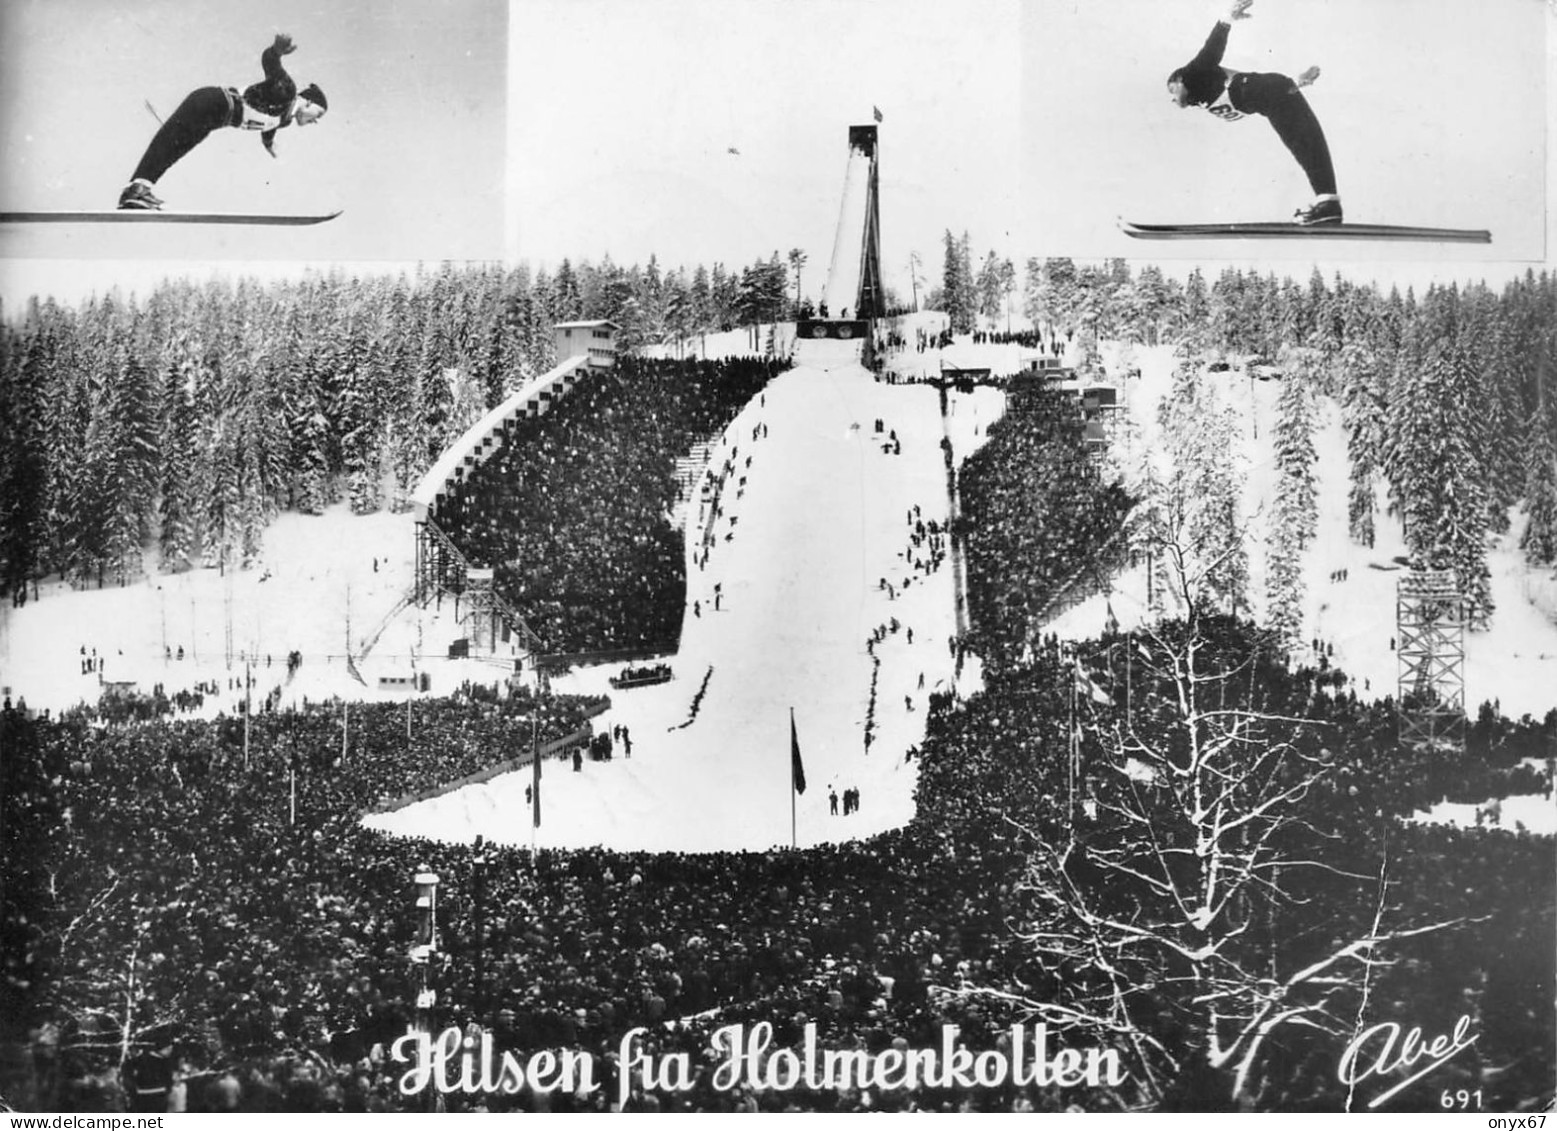 HILSEN Fra Holmenkollen-Norvège-Norge-Norway-Saut à Ski-Templin-Jeux Olympiques Hiver OSLO 1952-Cachet-Tampon-Stempel - Jeux Olympiques